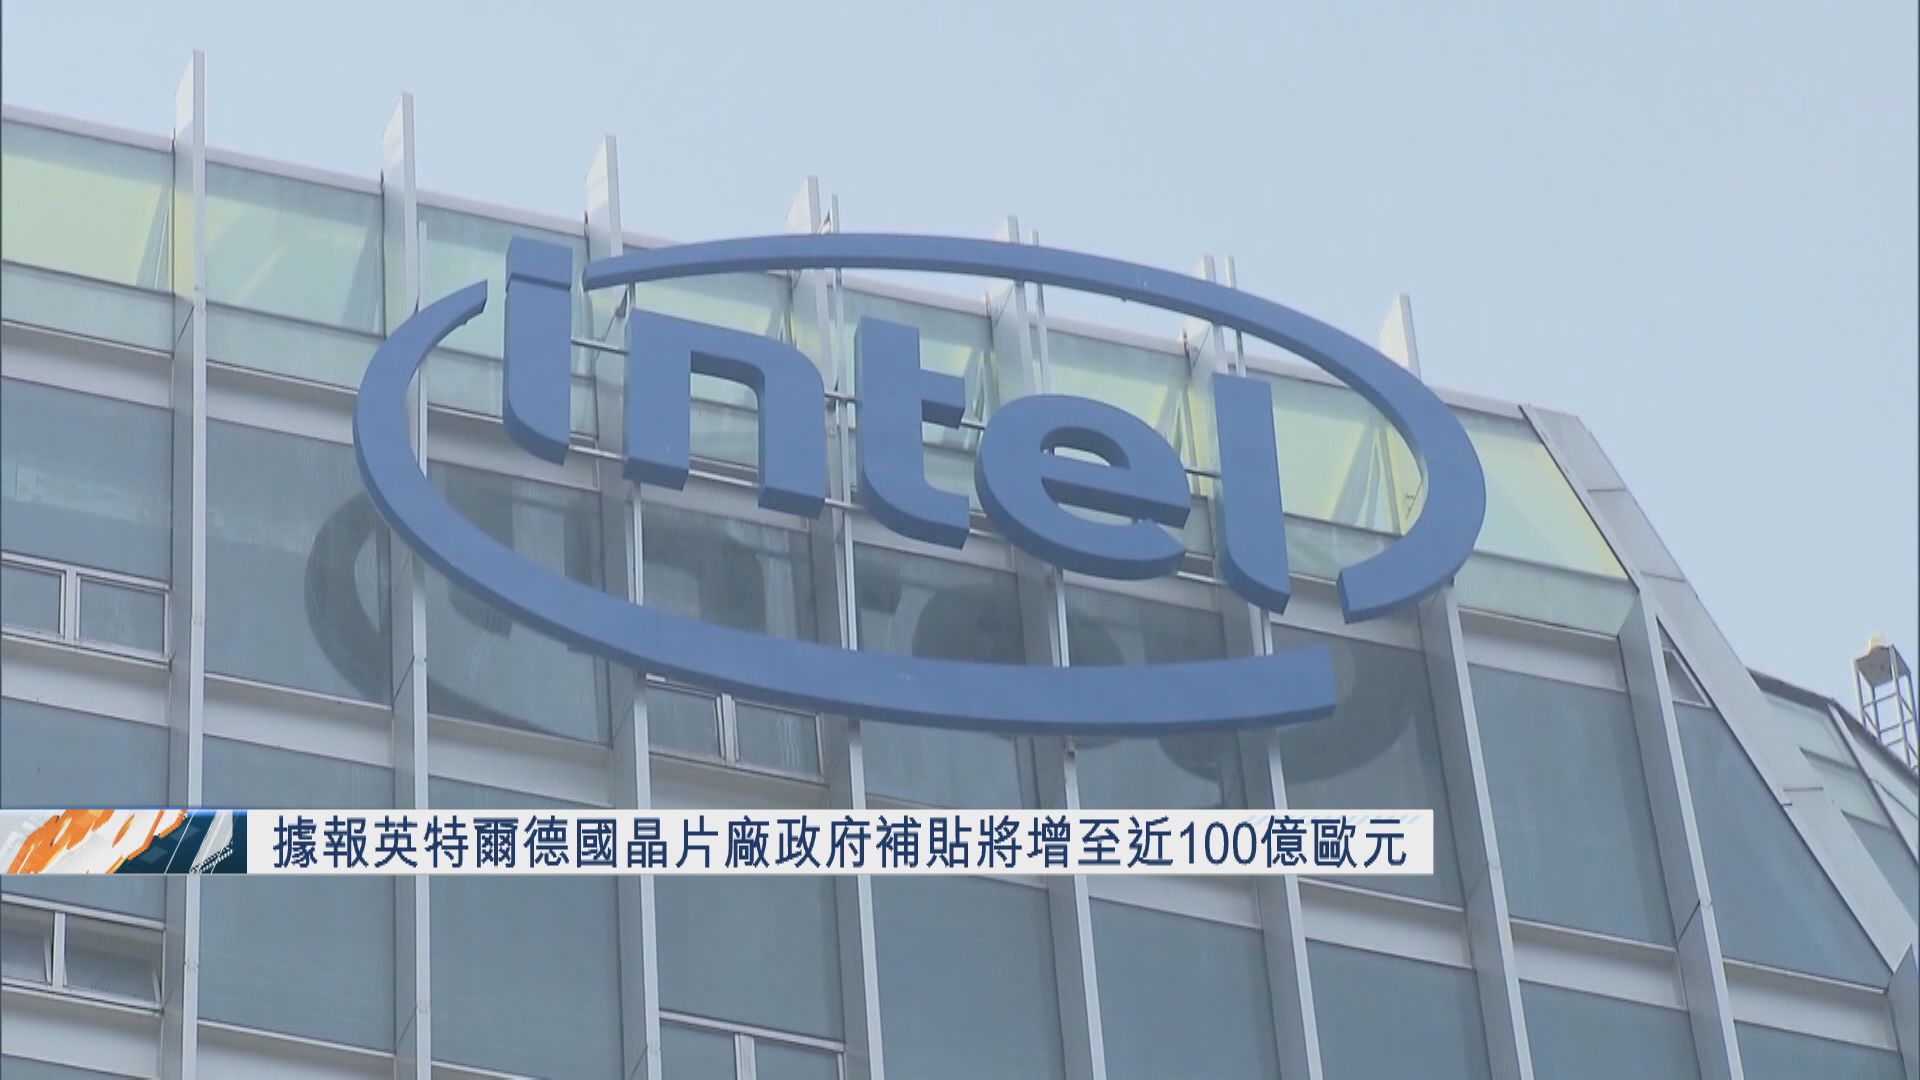 【最快下周公布】彭博:Intel德晶片廠政府補貼加碼至近百億歐元